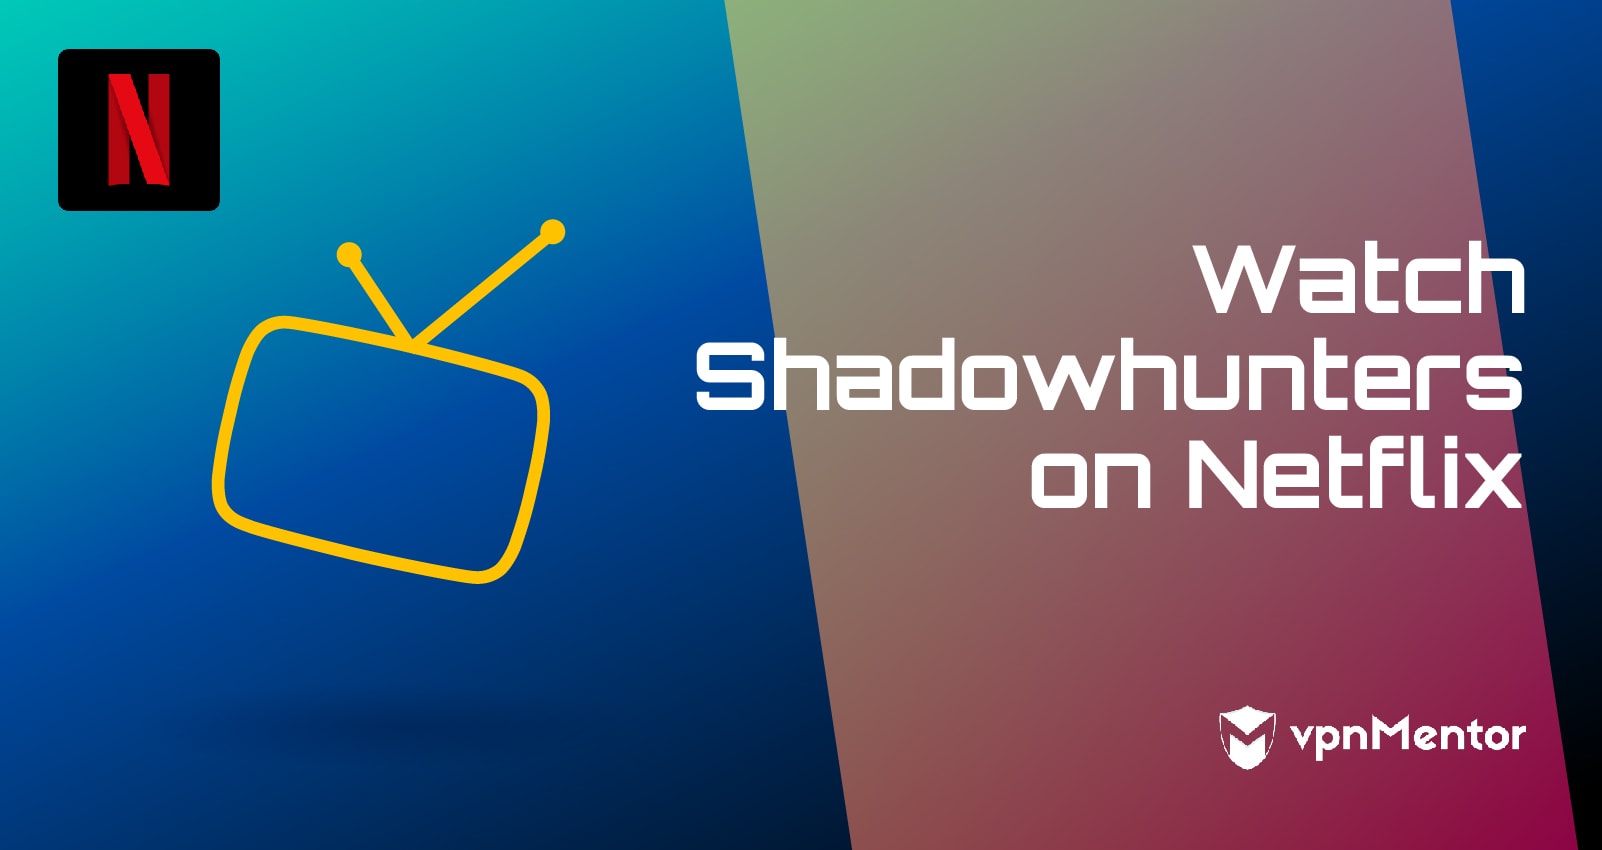 Shadowhunters ist auf Netflix! So kannst Du es 2022 gucken